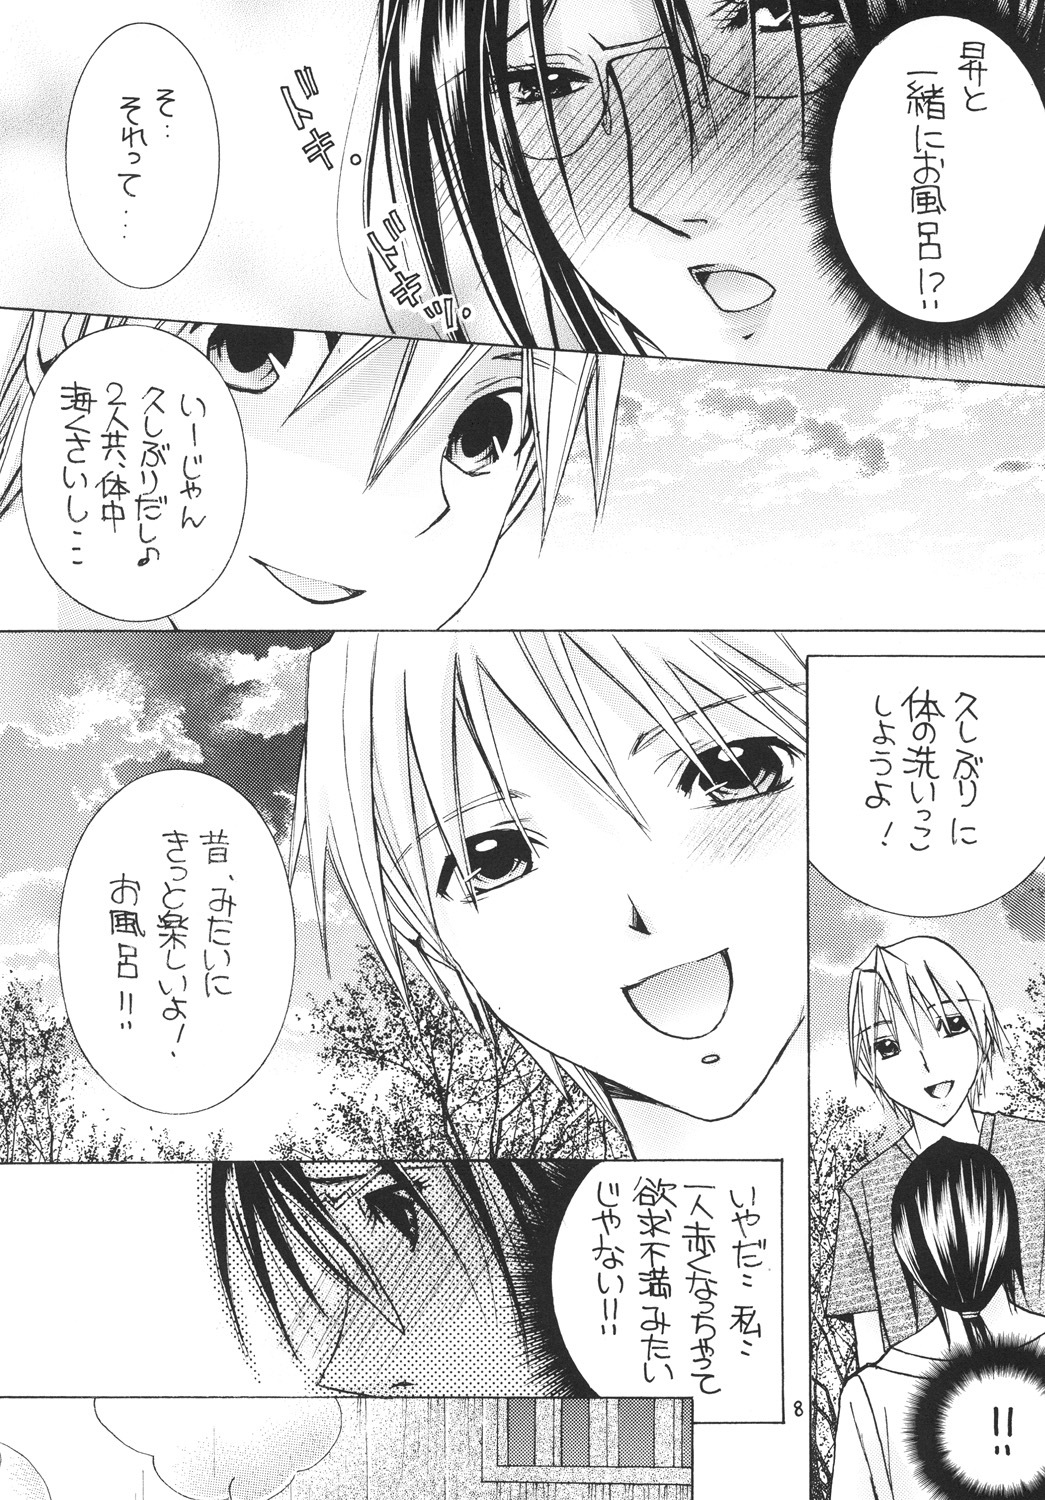 [M.MACABRE (Nyanko Fujin-sama)] Jukuhaha 11 [Digital] page 7 full